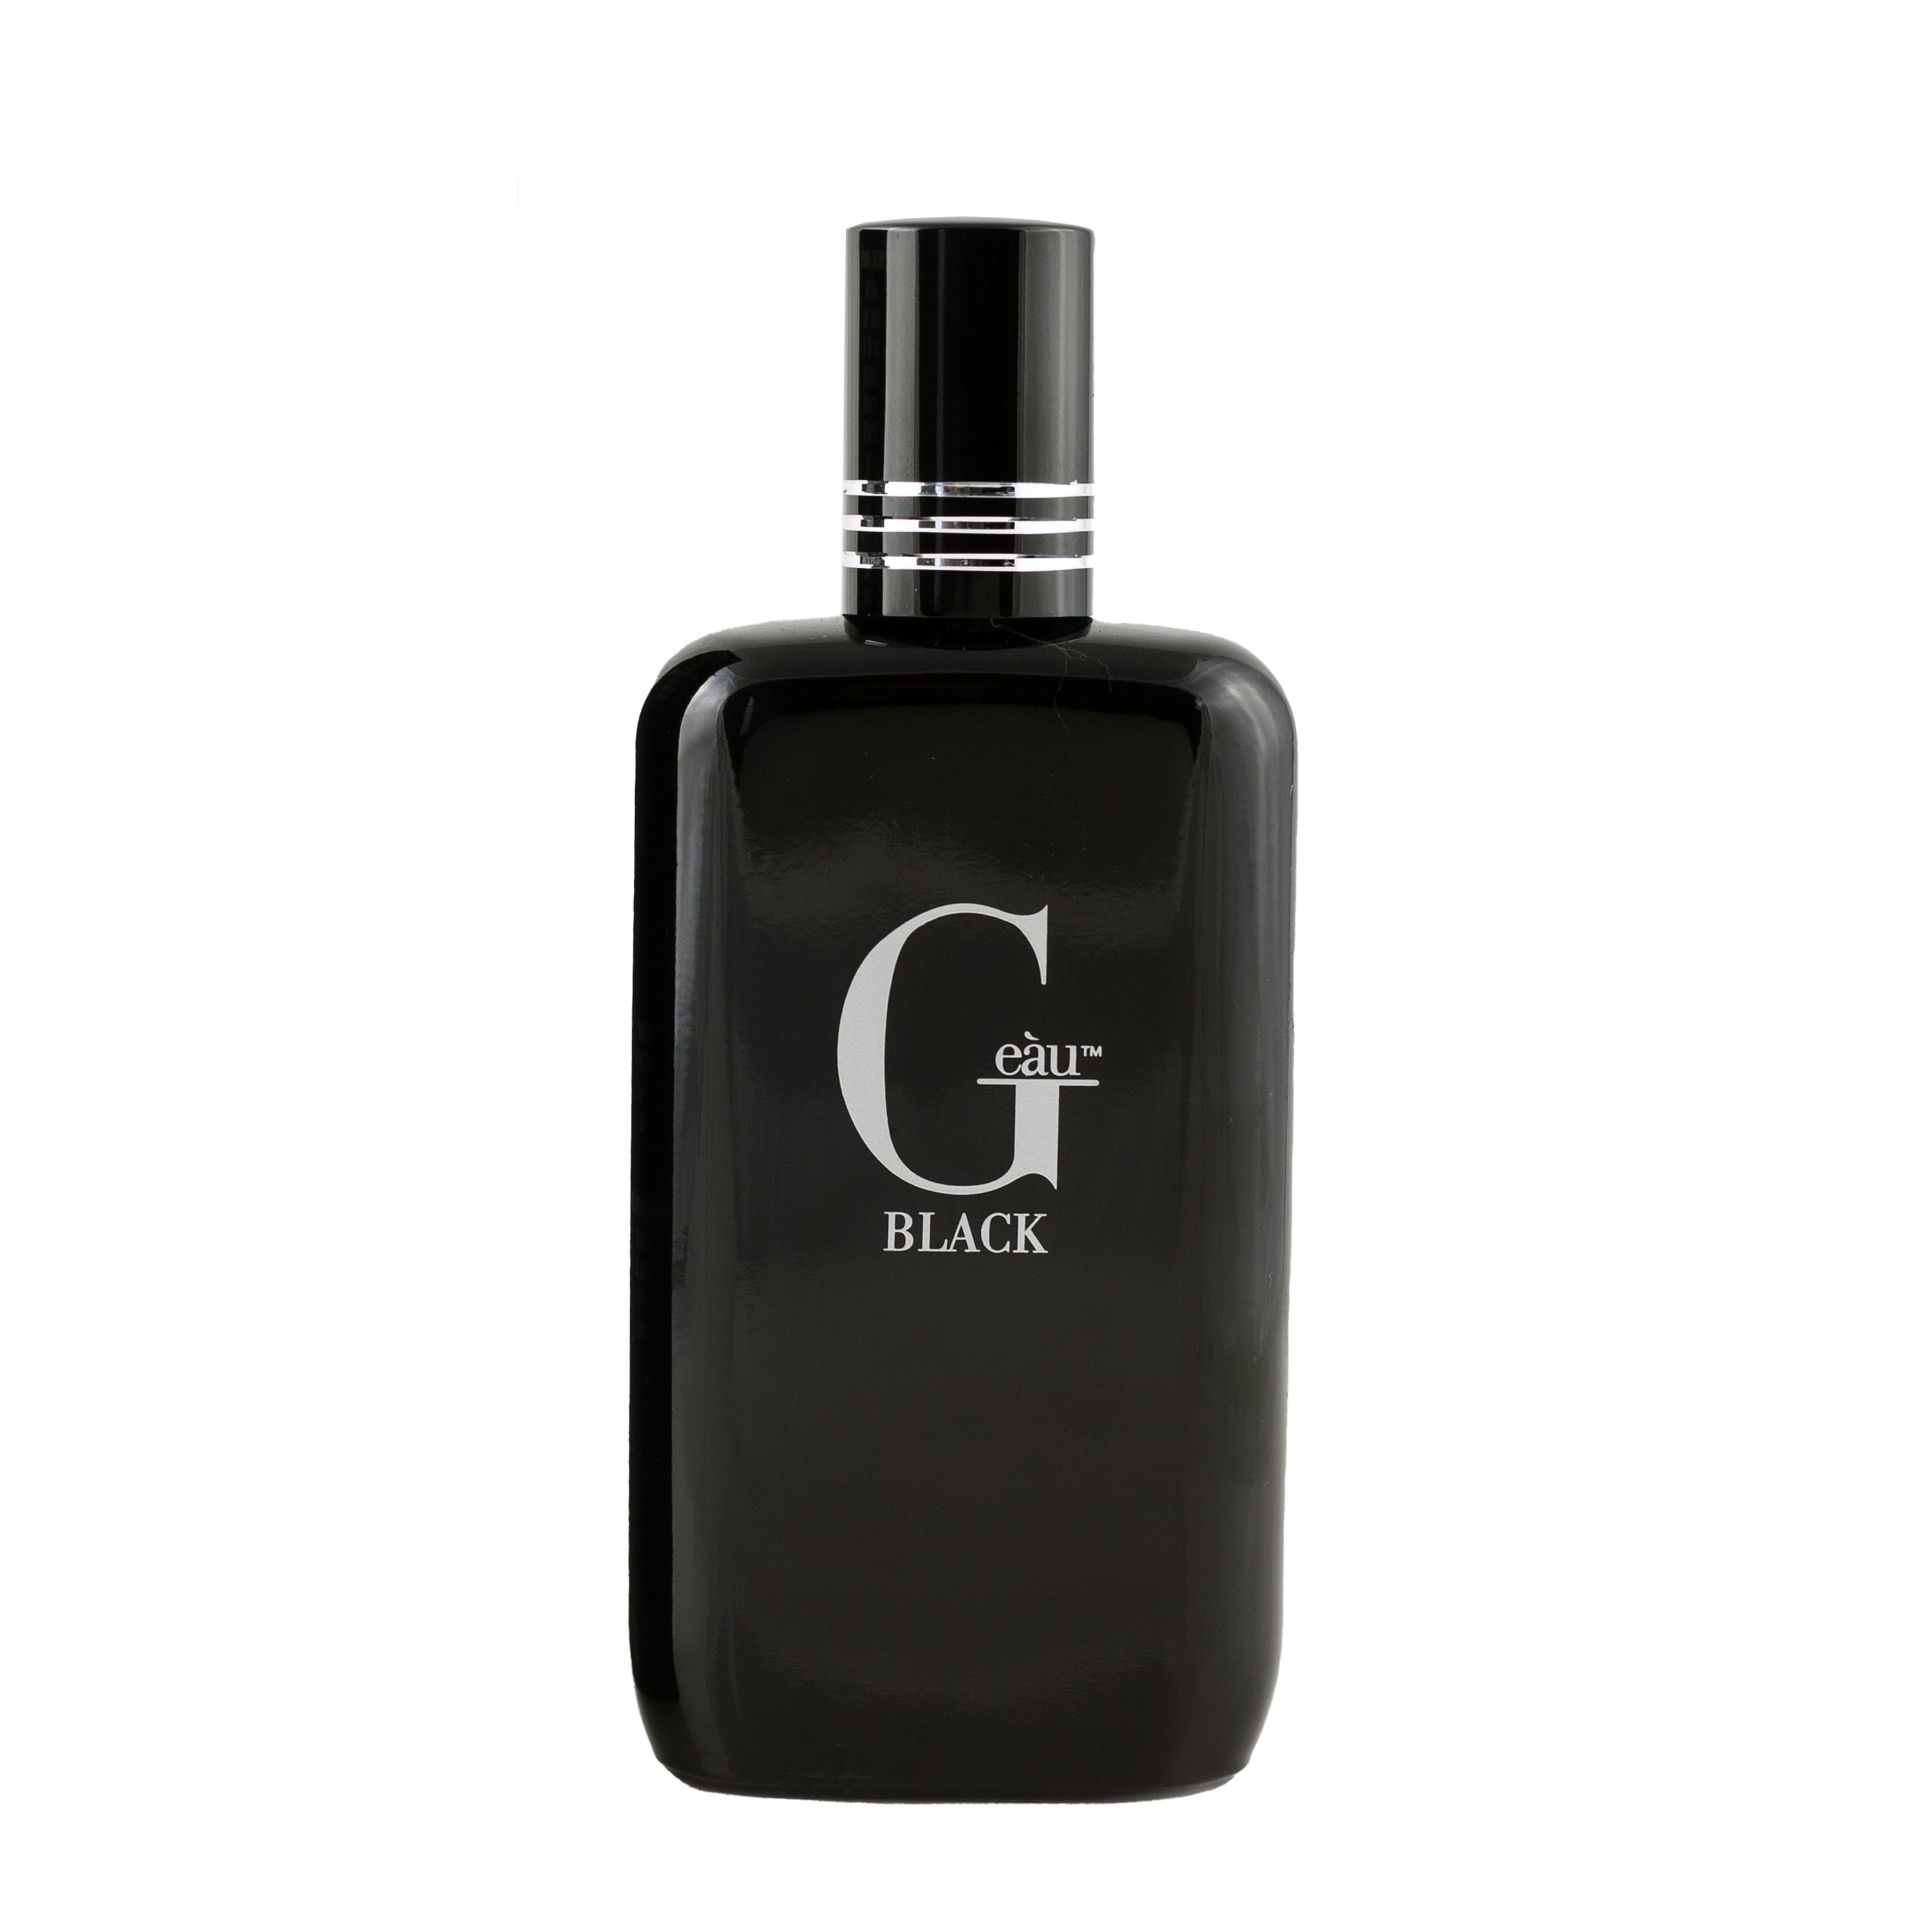 acqua di gio cologne black bottle